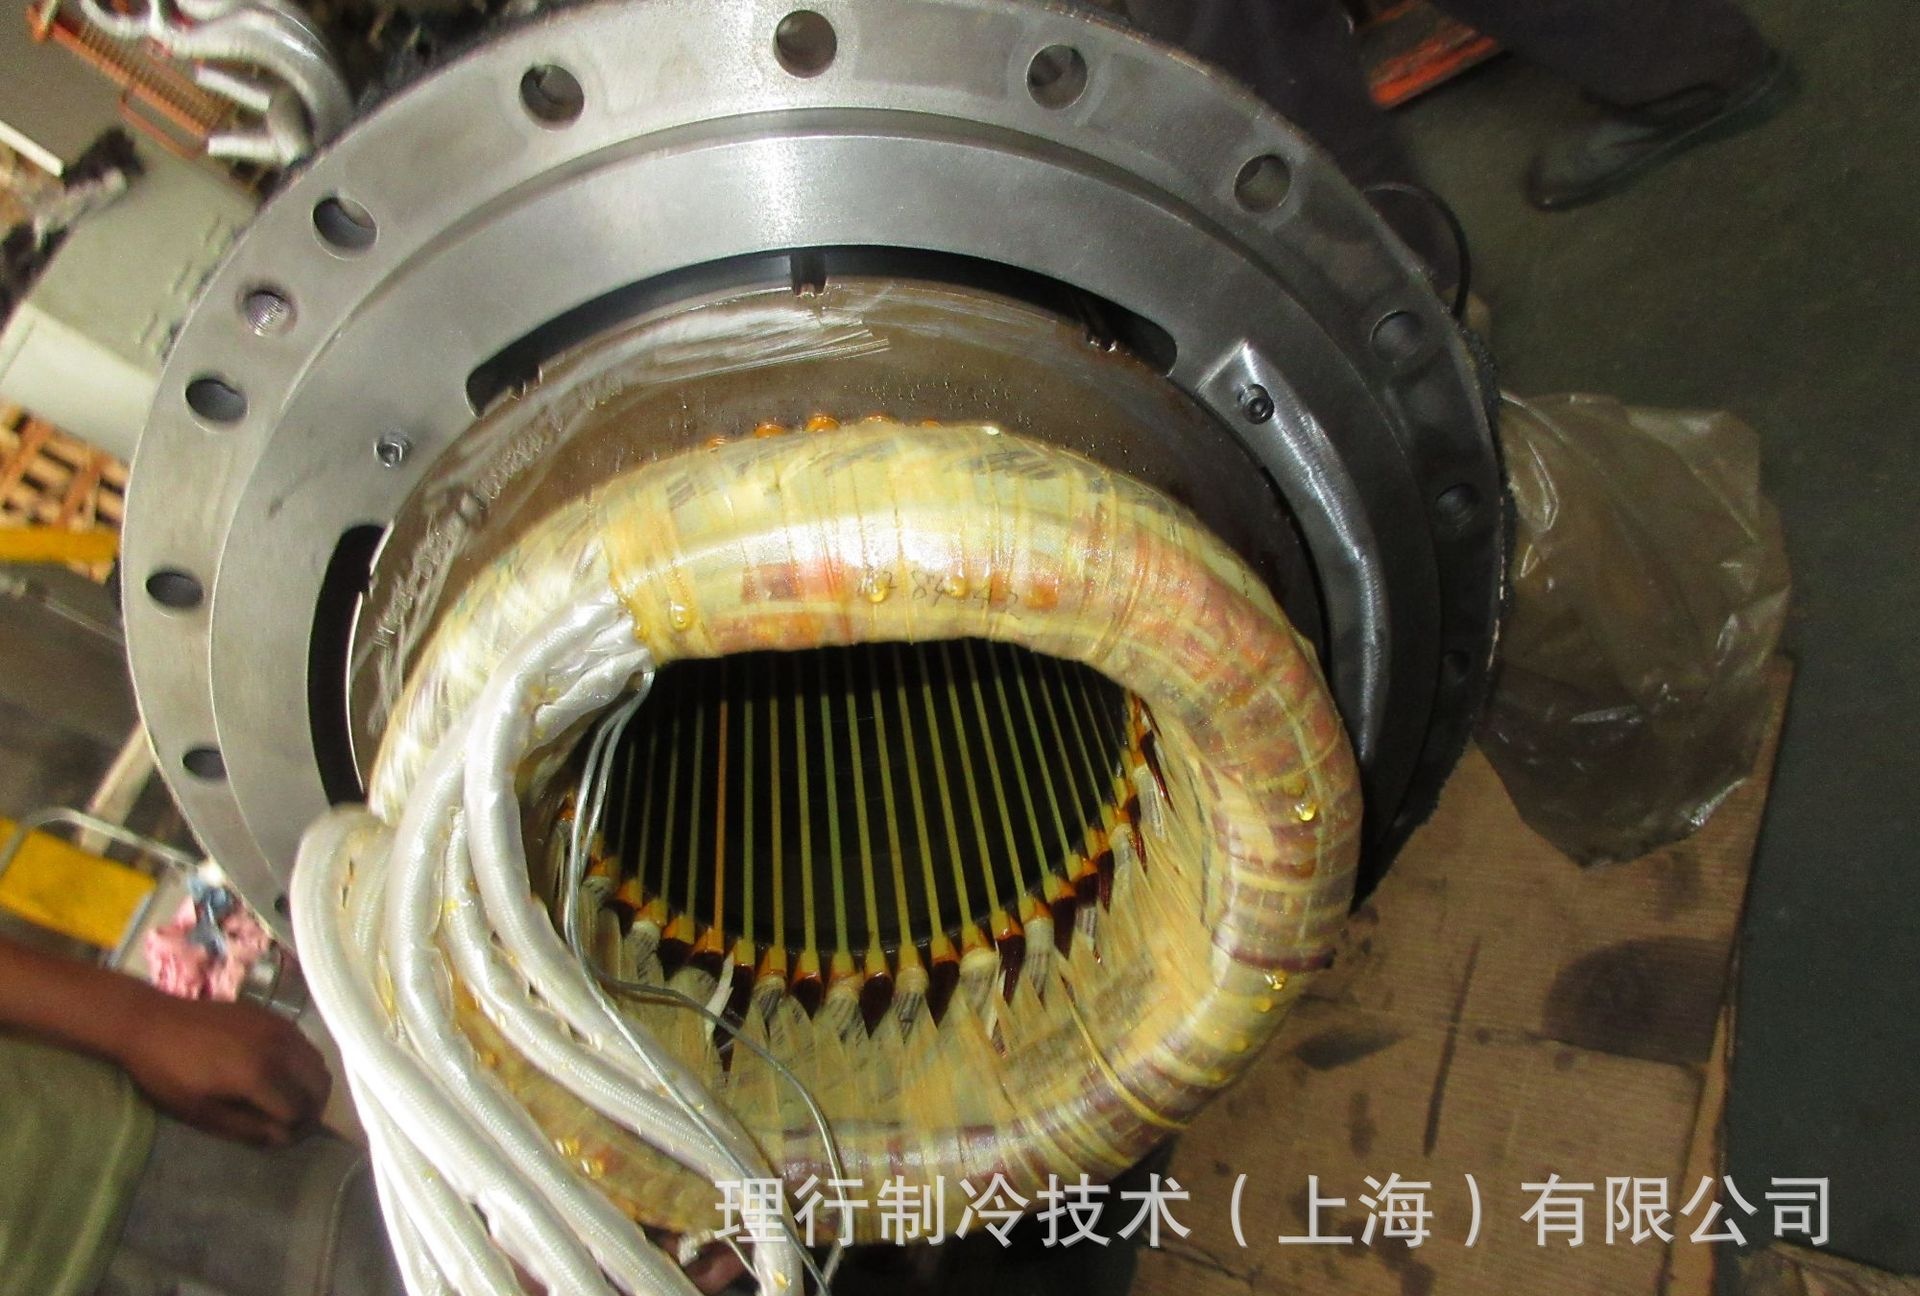 复盛SRG-770 压缩机电机维修 轴承维修  更换冷冻油  内部清洗